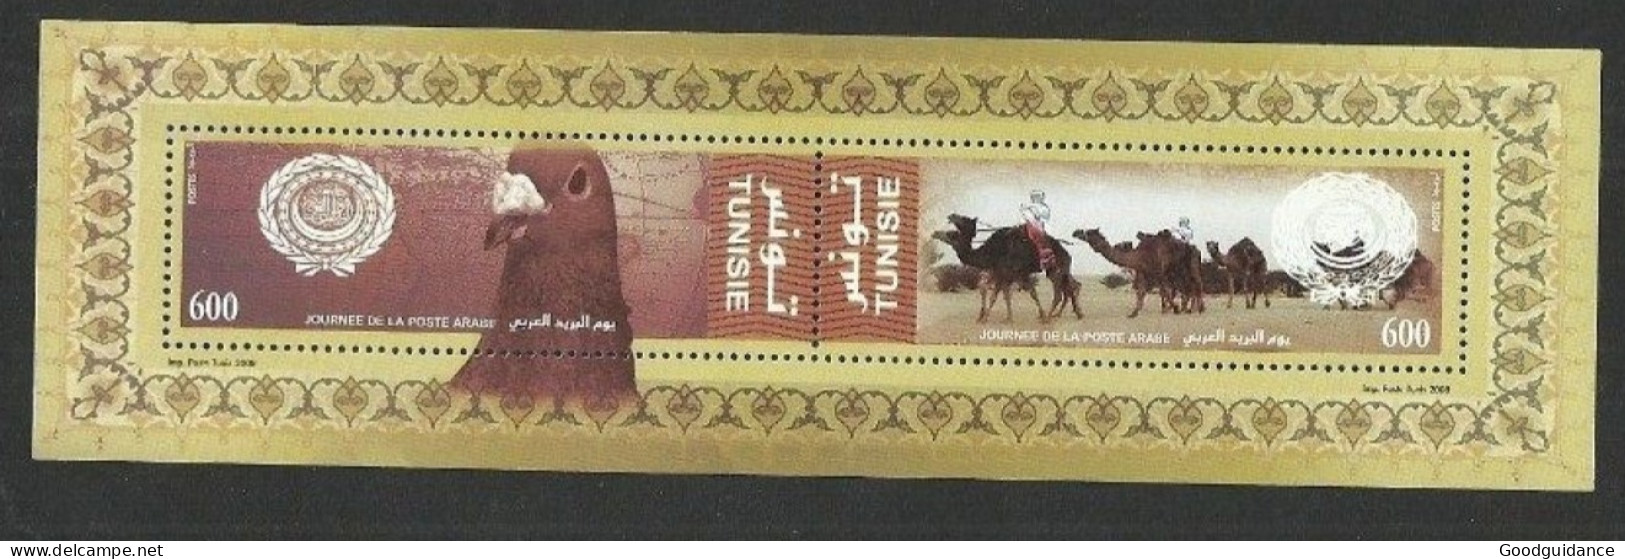 2008- Tunisia-  Minisheet  - Arab Post Day 2008 - Bird - Camel - Desert - MNH** - Gemeinschaftsausgaben